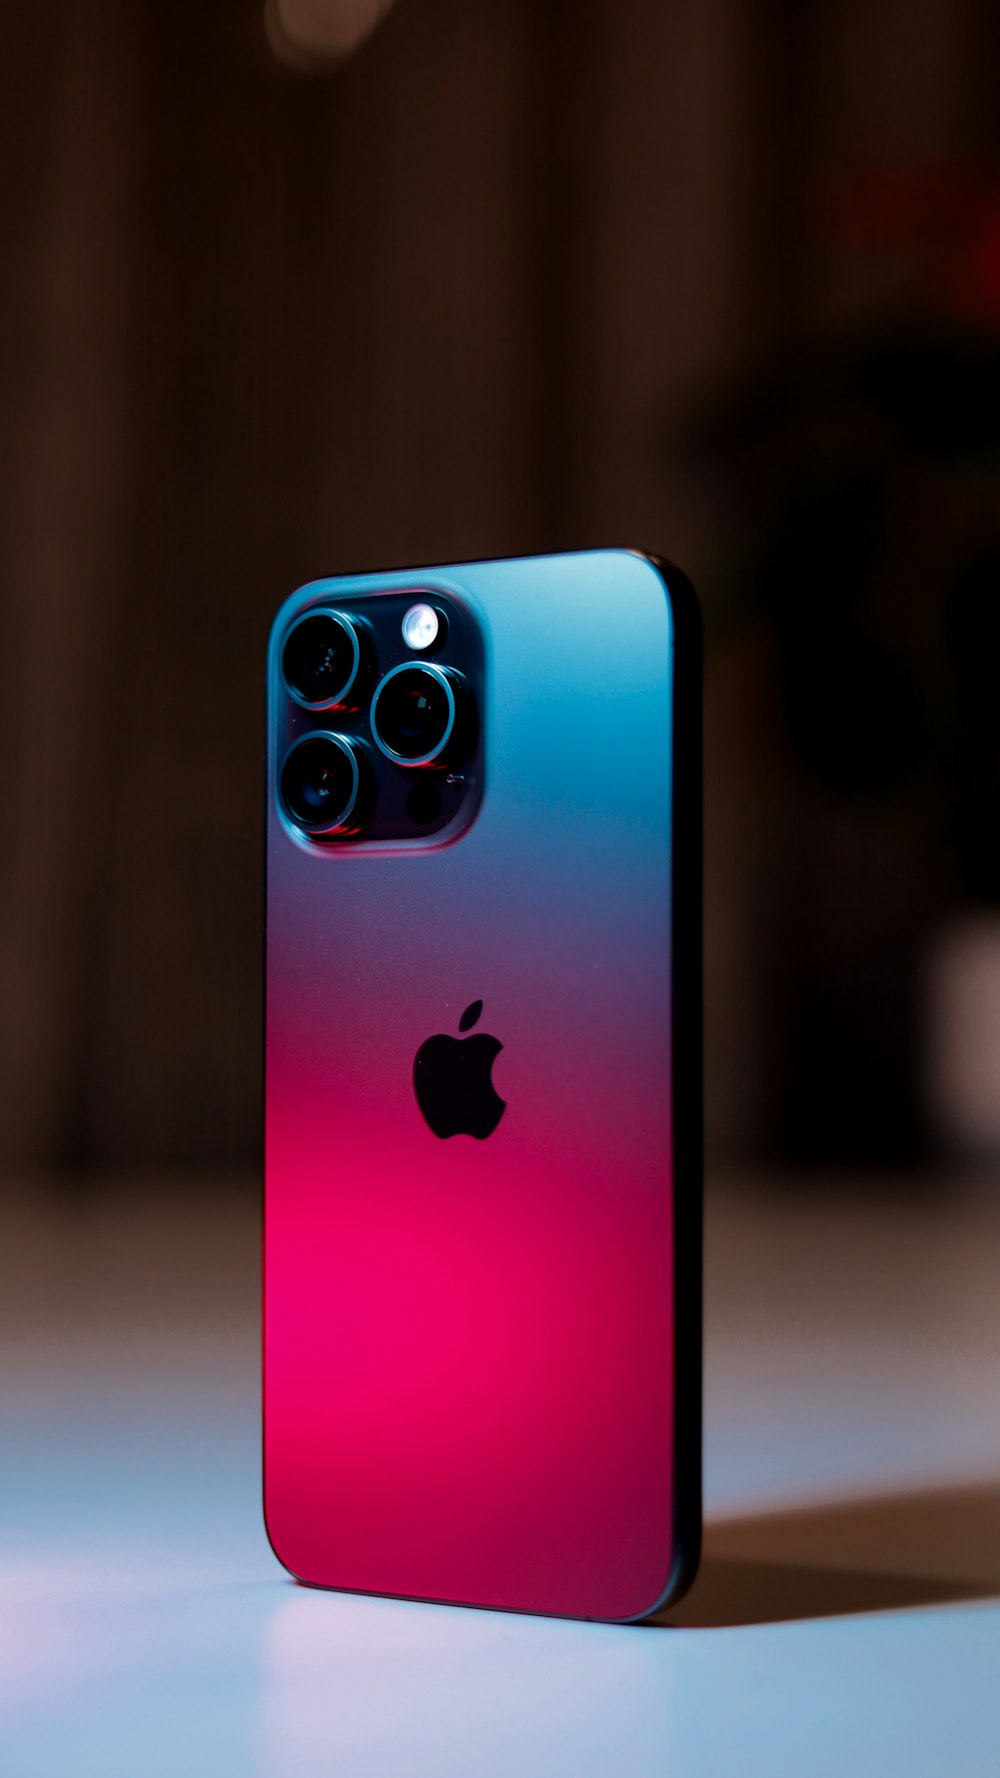 테이블 위에 놓인 분홍색과 파란색의 iPhone